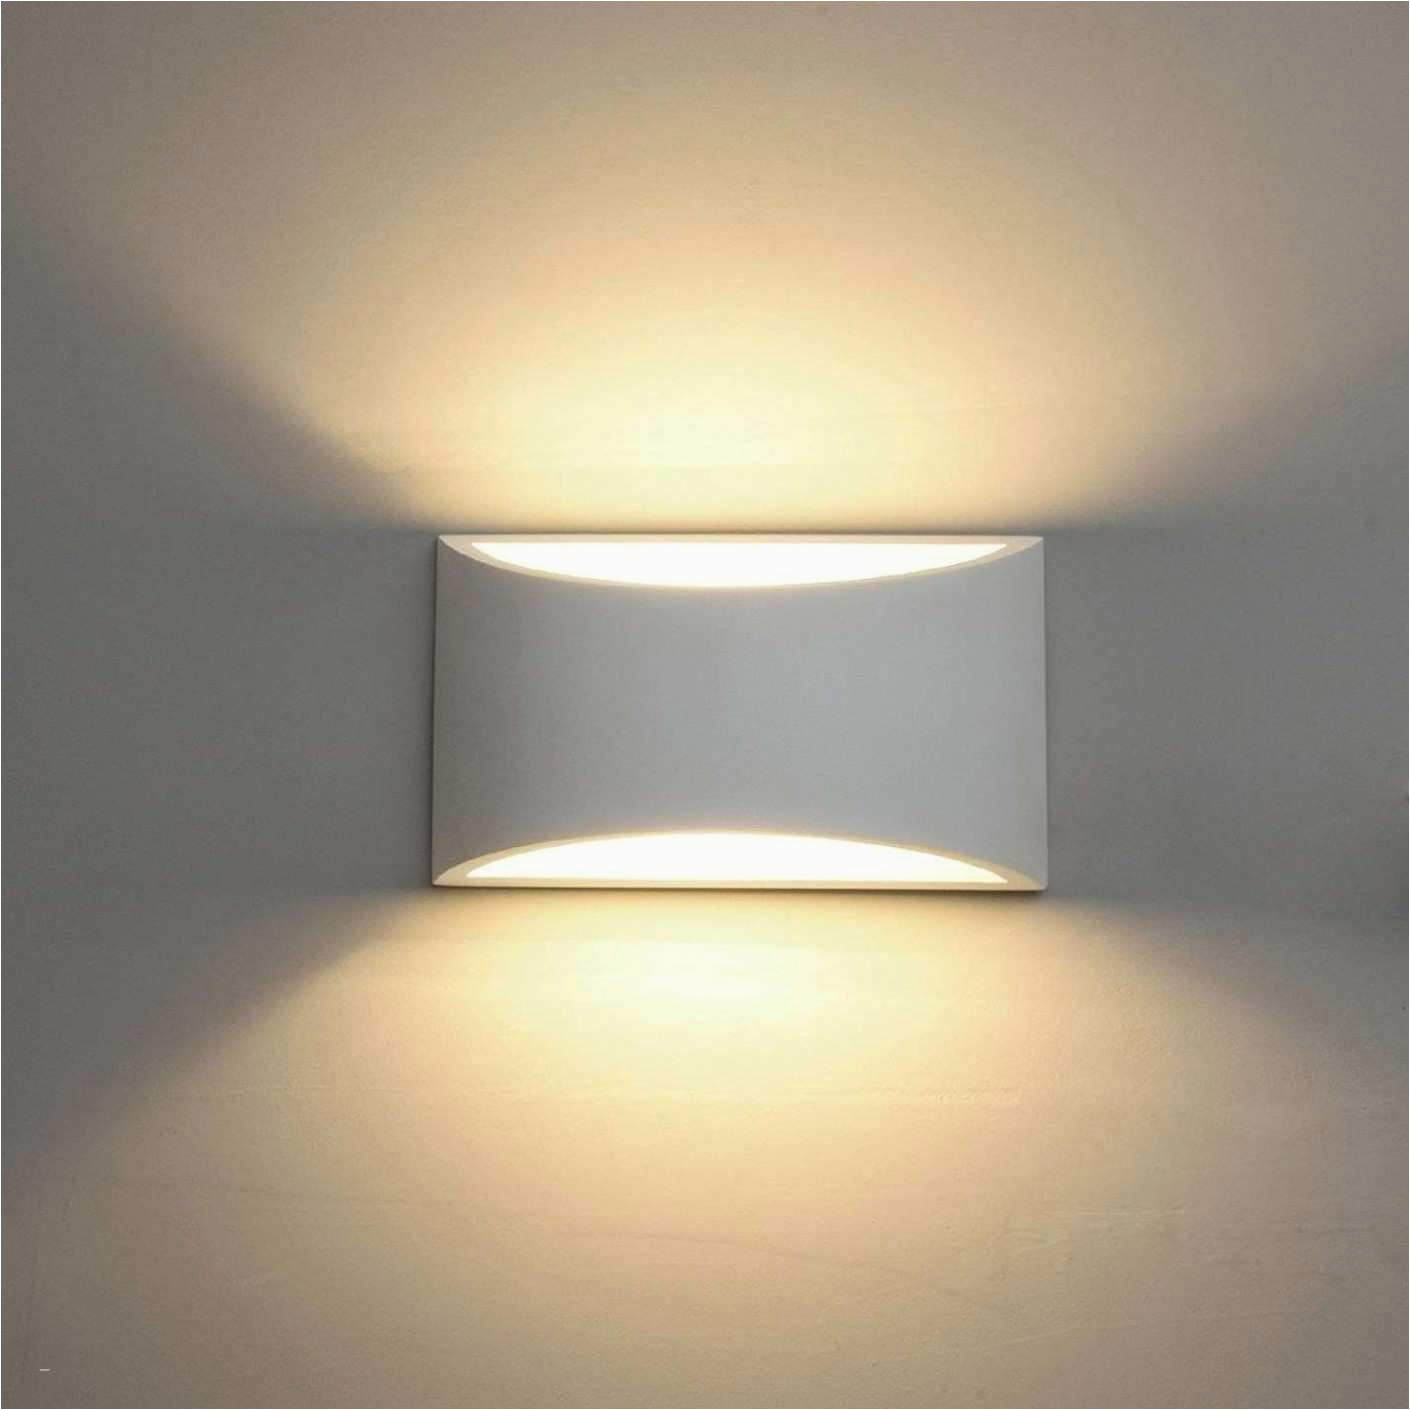 deckenlampe wohnzimmer das beste von deckenlampe schlafzimmer 0d archives design von led lampen of deckenlampe wohnzimmer